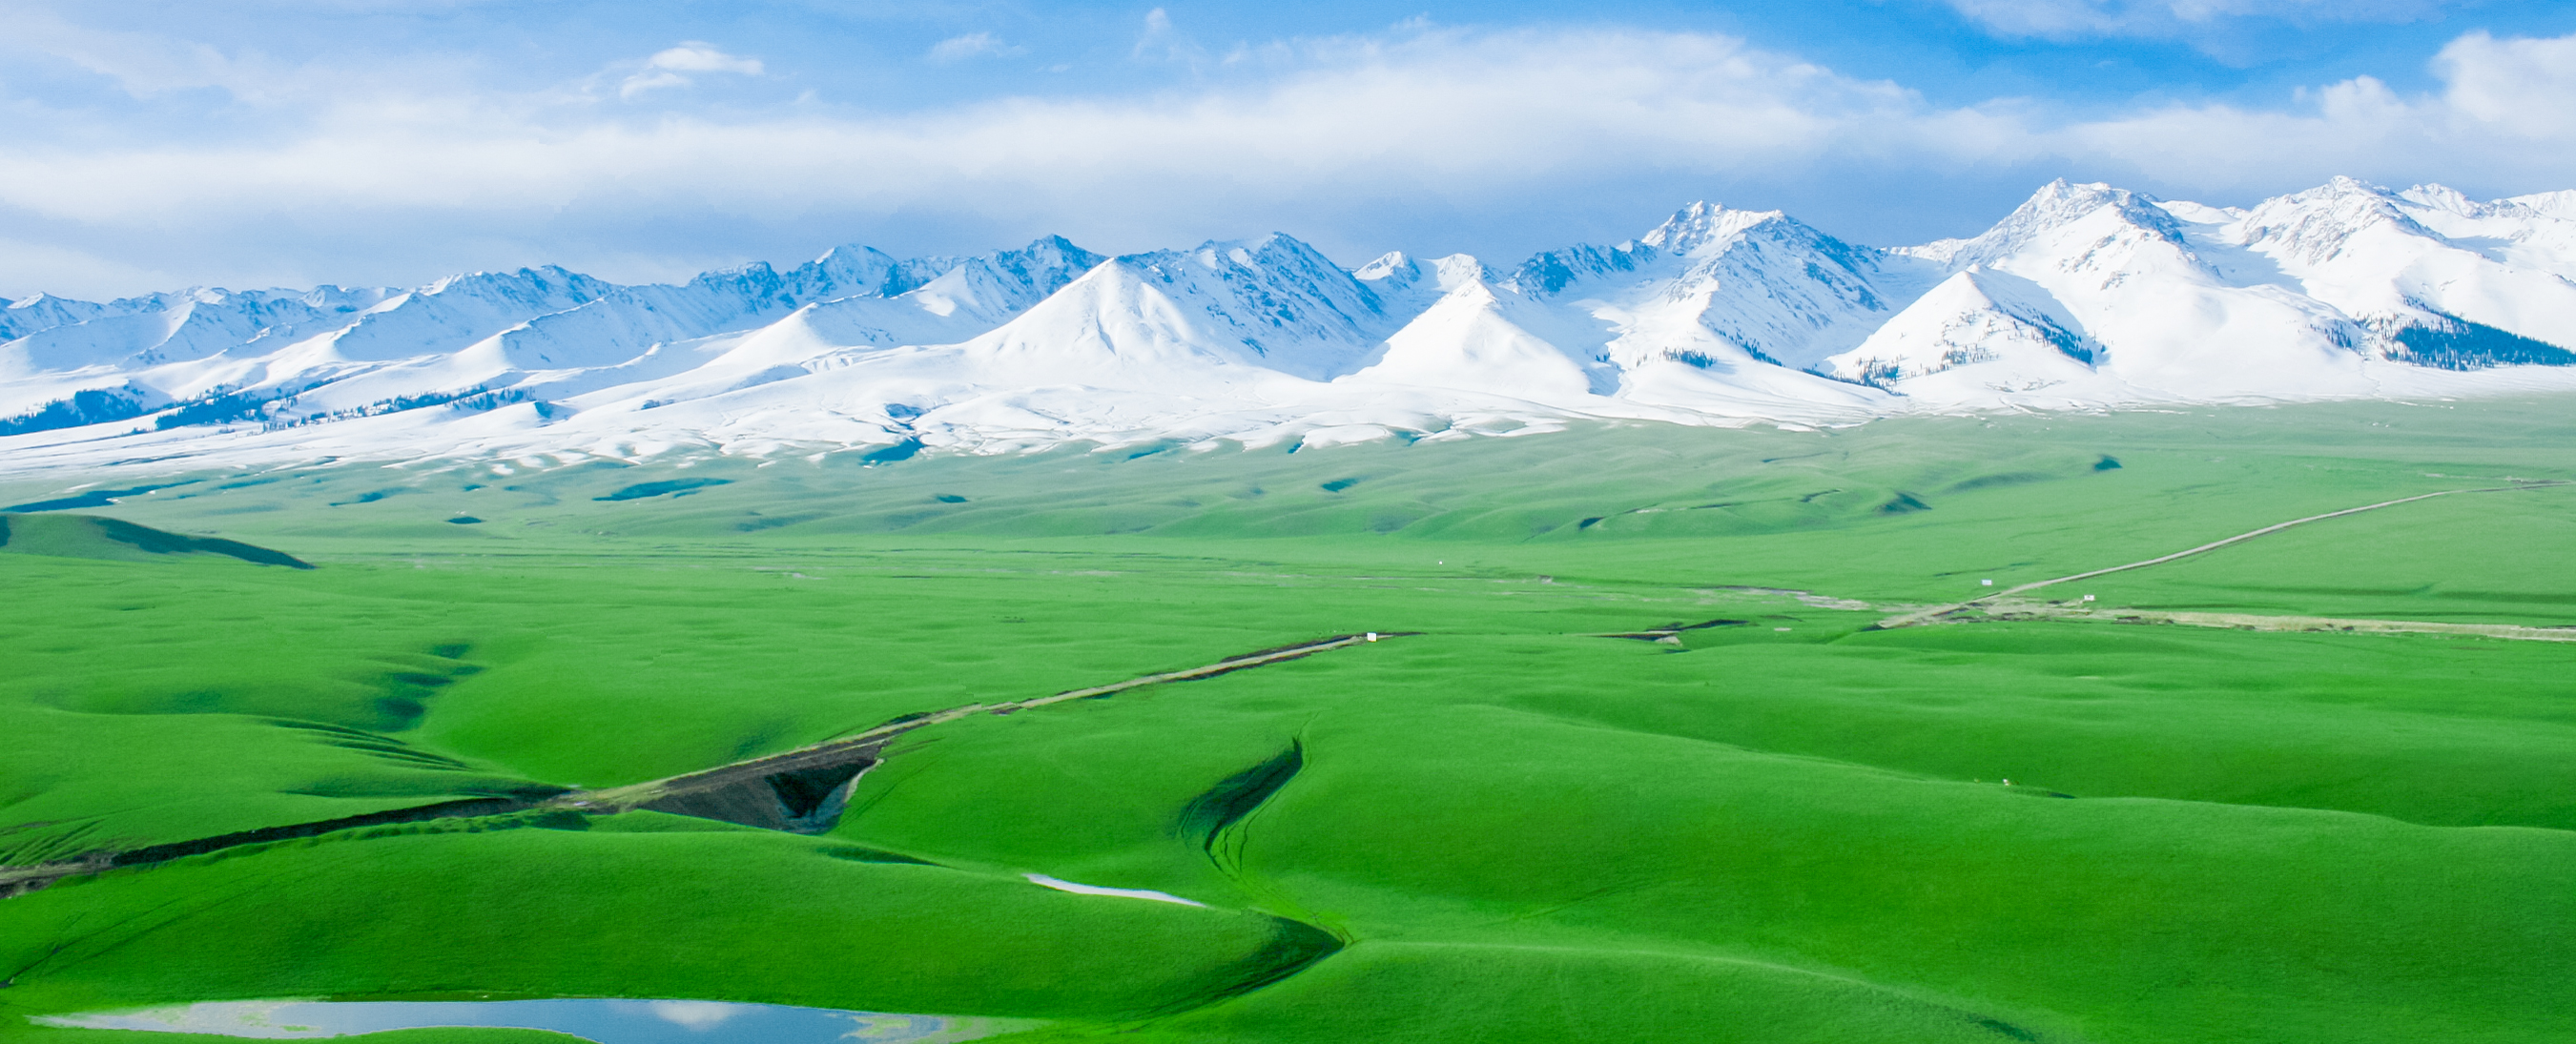 Xinjiang Tours